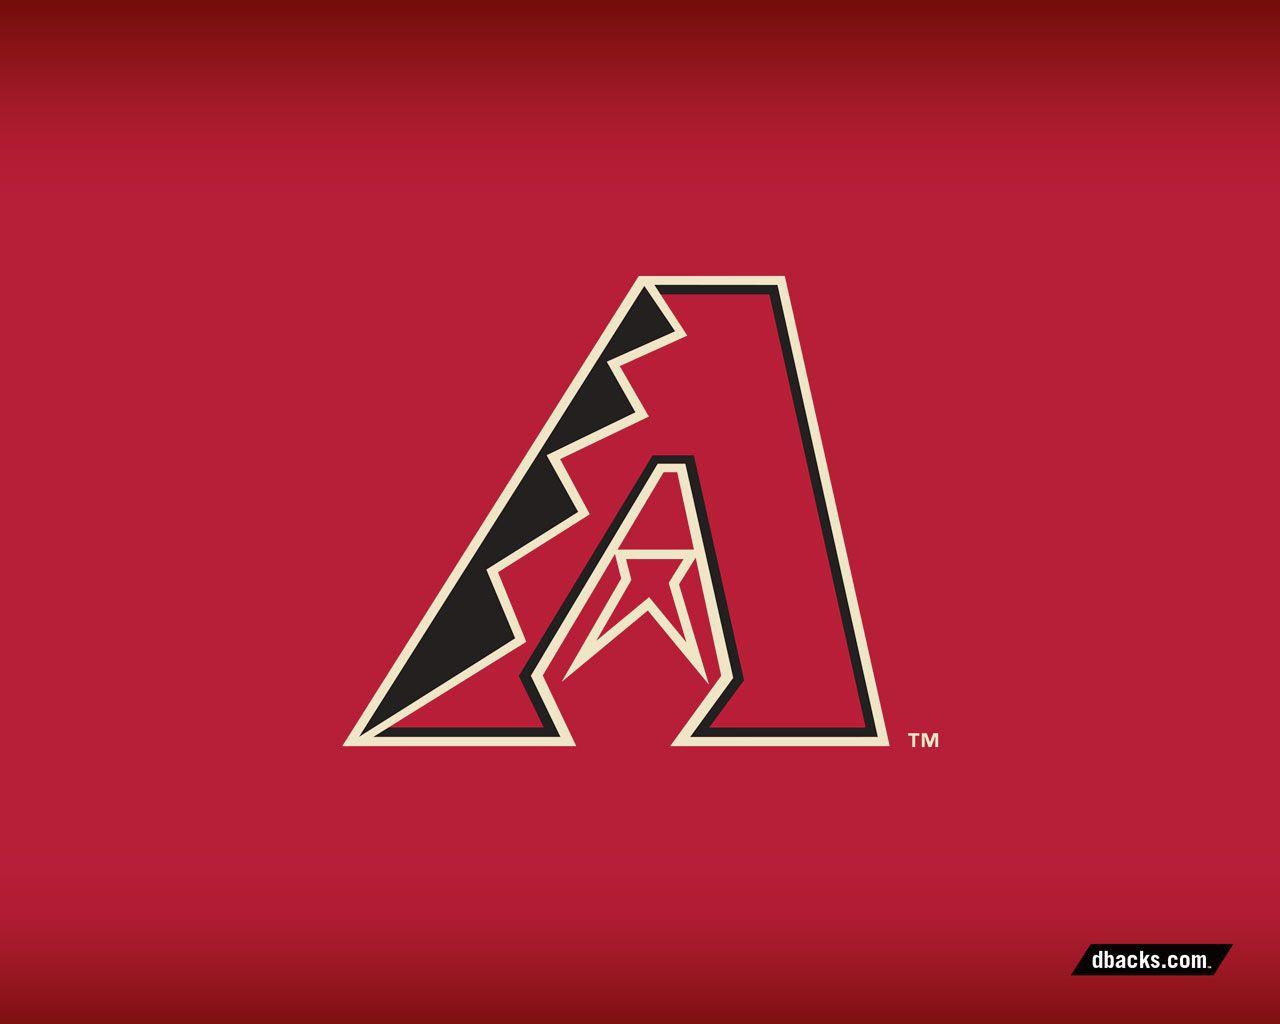 Diamondbacks Logo - Wallpaper | Arizona Diamondbacks